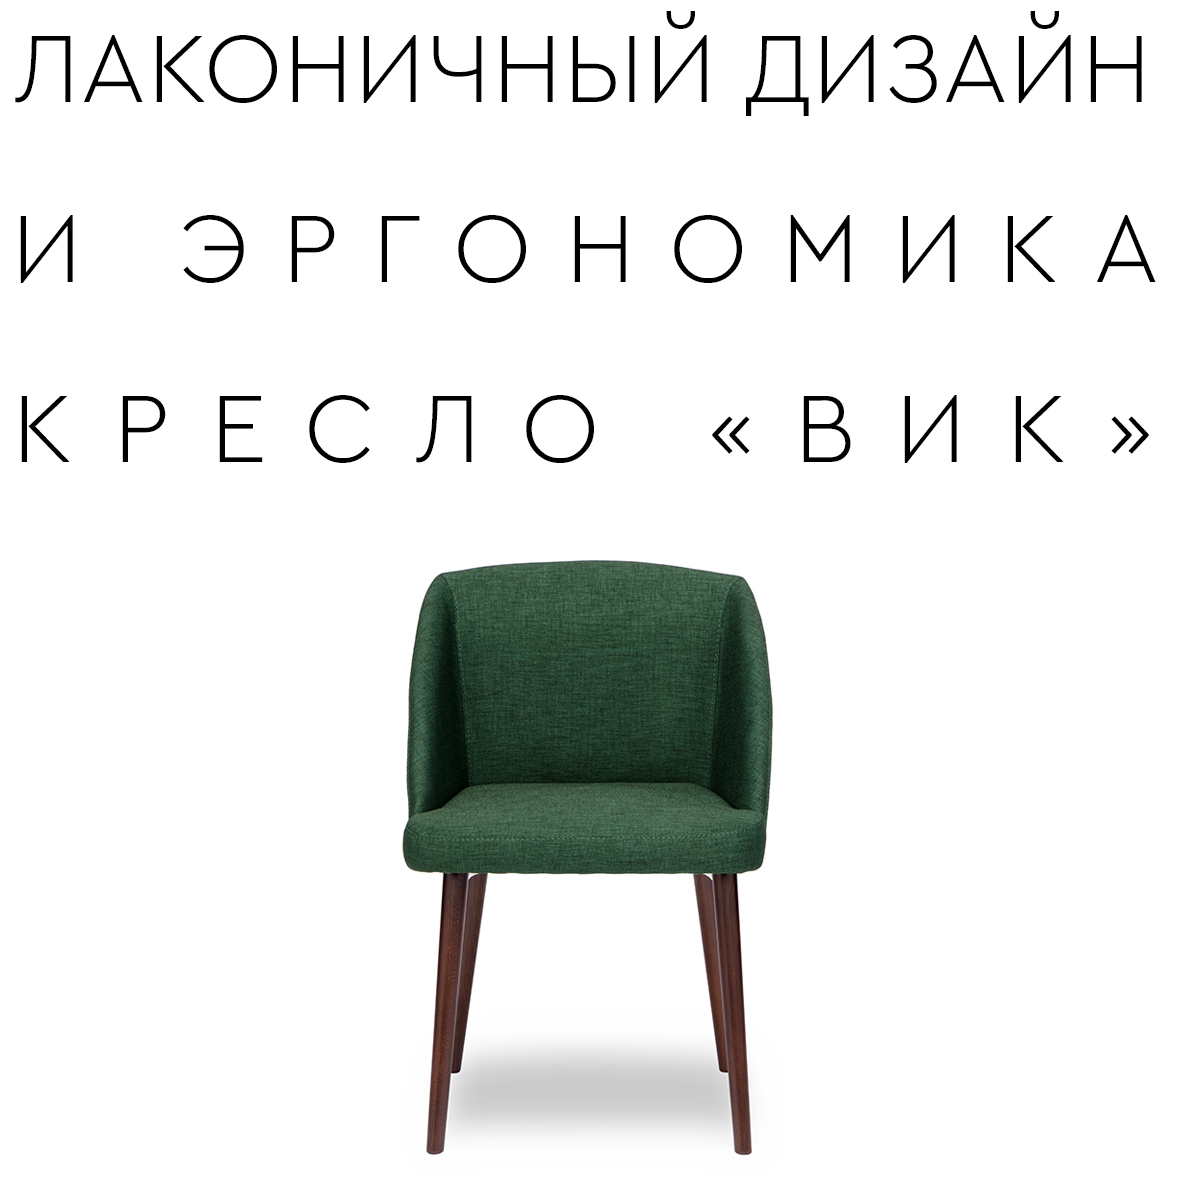 Новая модель кресла «ВИК»